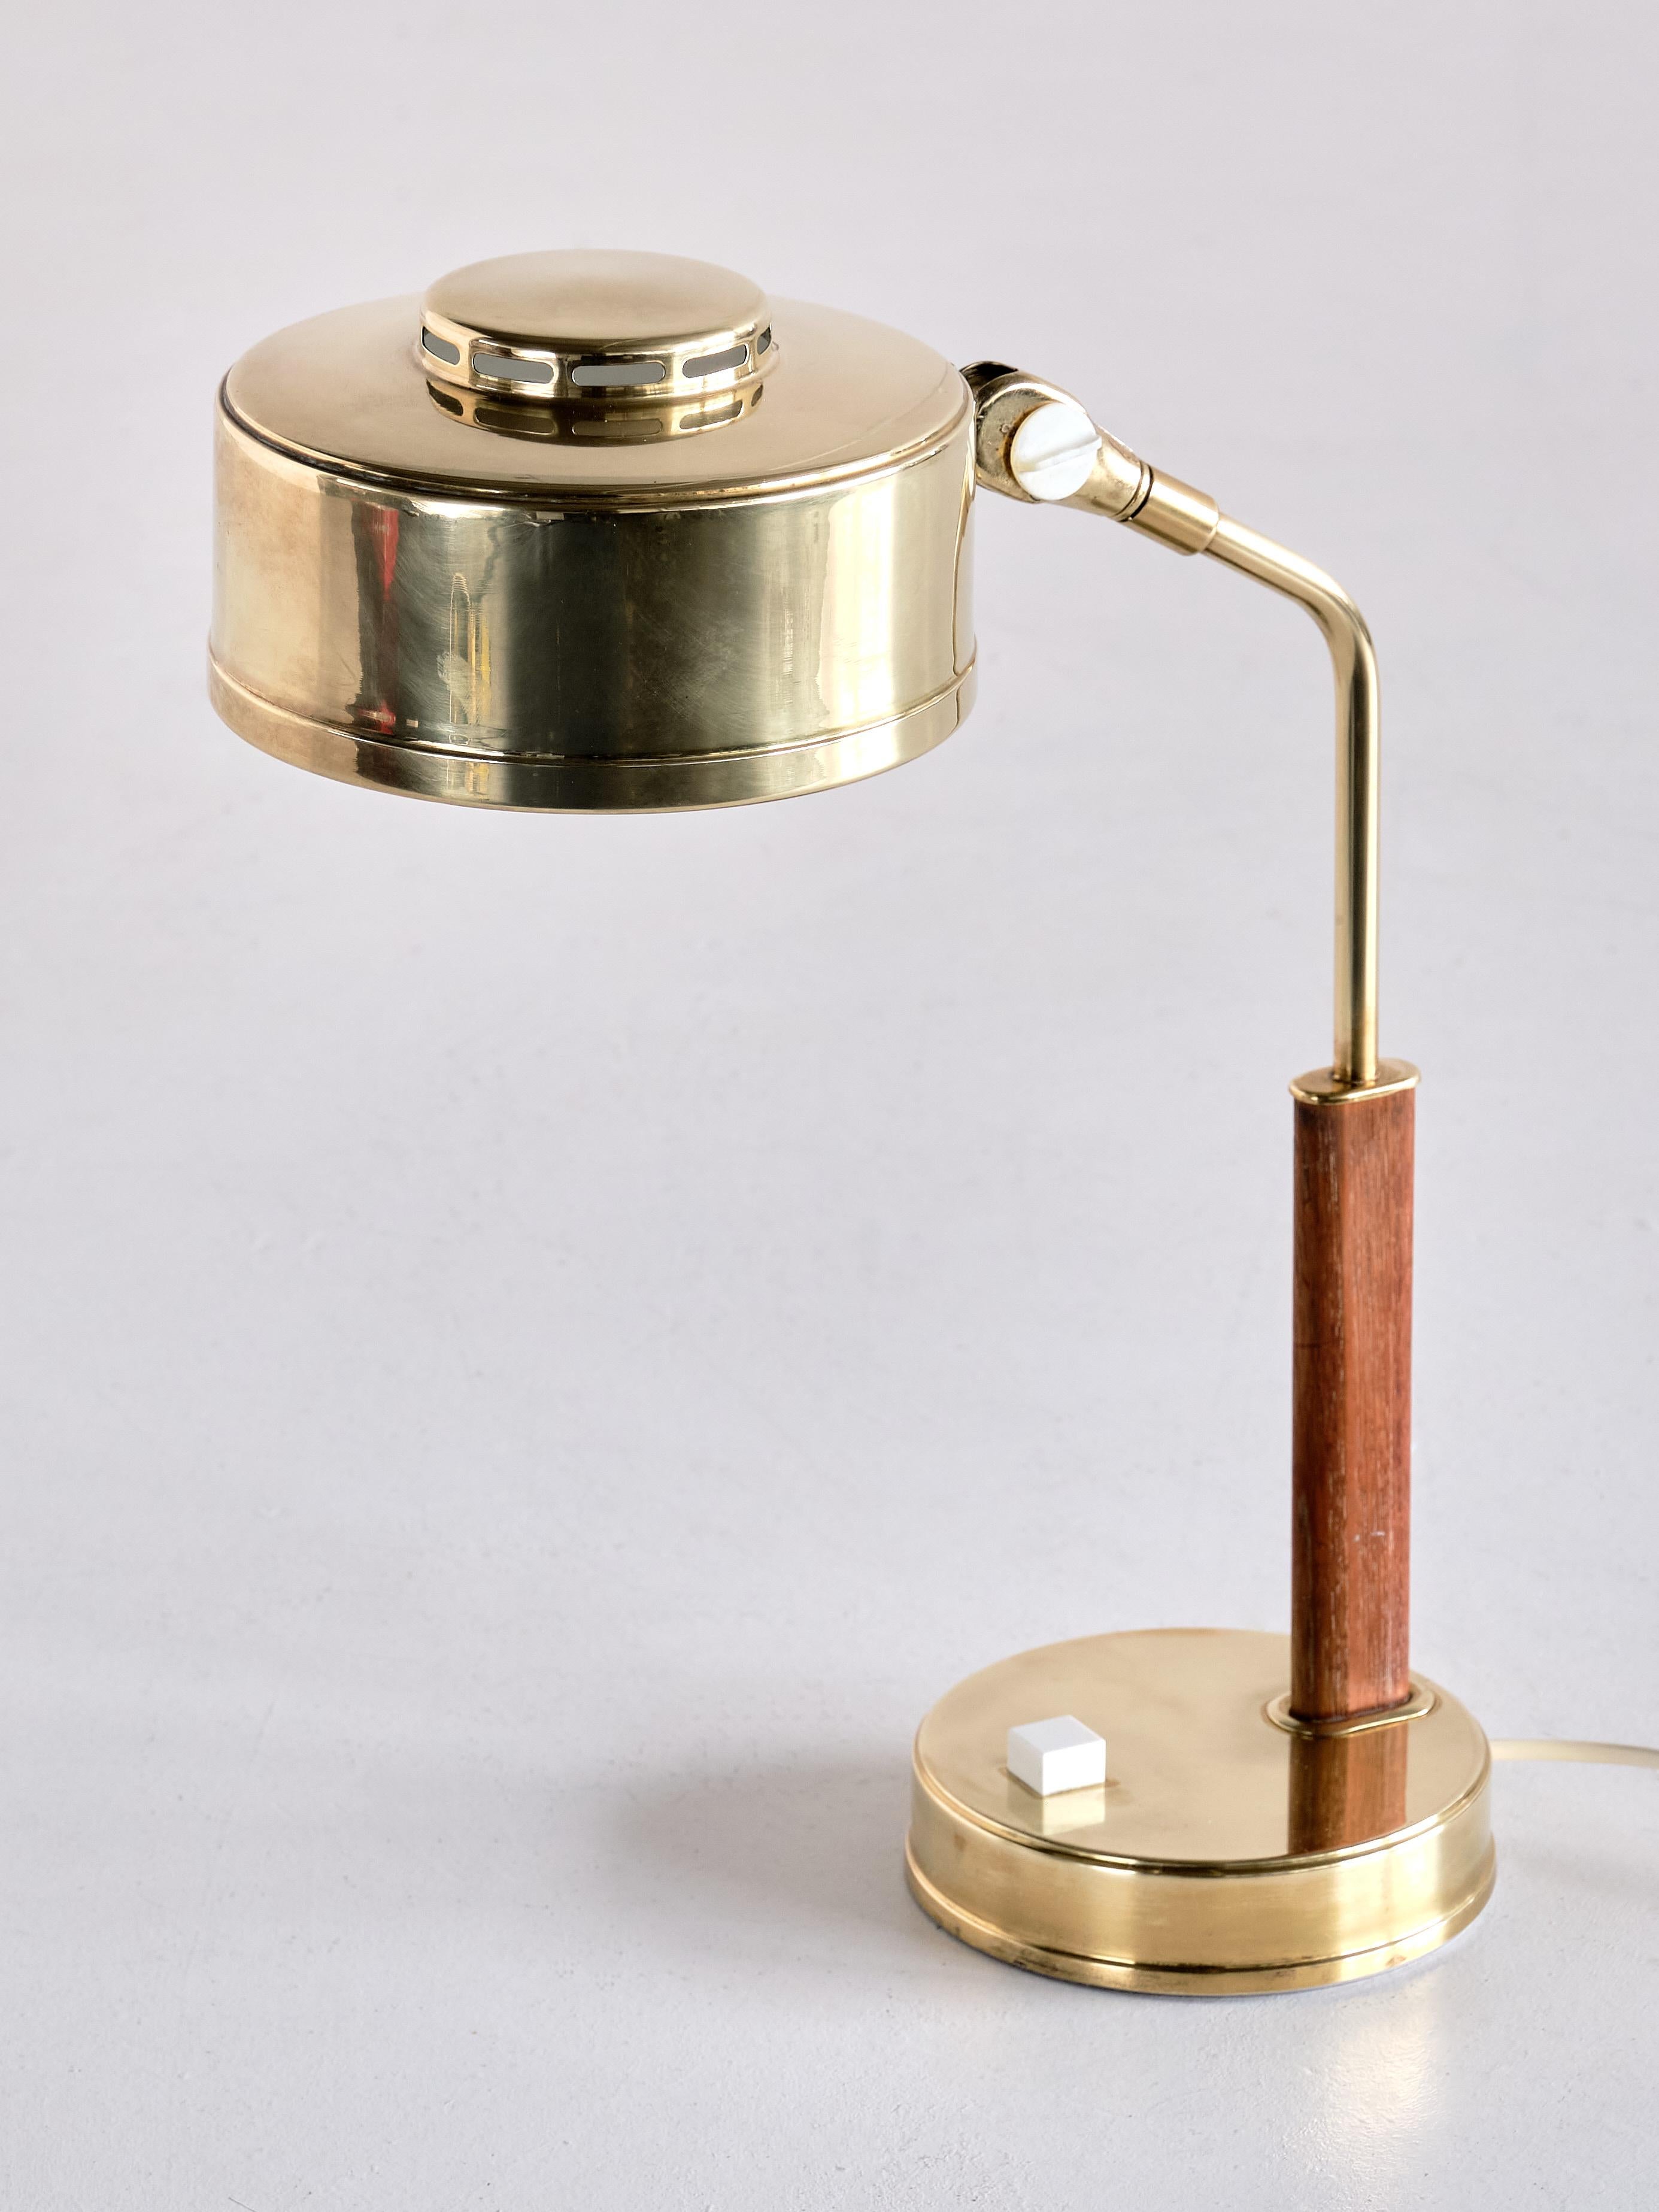 Bröderna Johansson Desk Lamp in Brass and Teak, Skellefteå, Sweden, 1950s 1